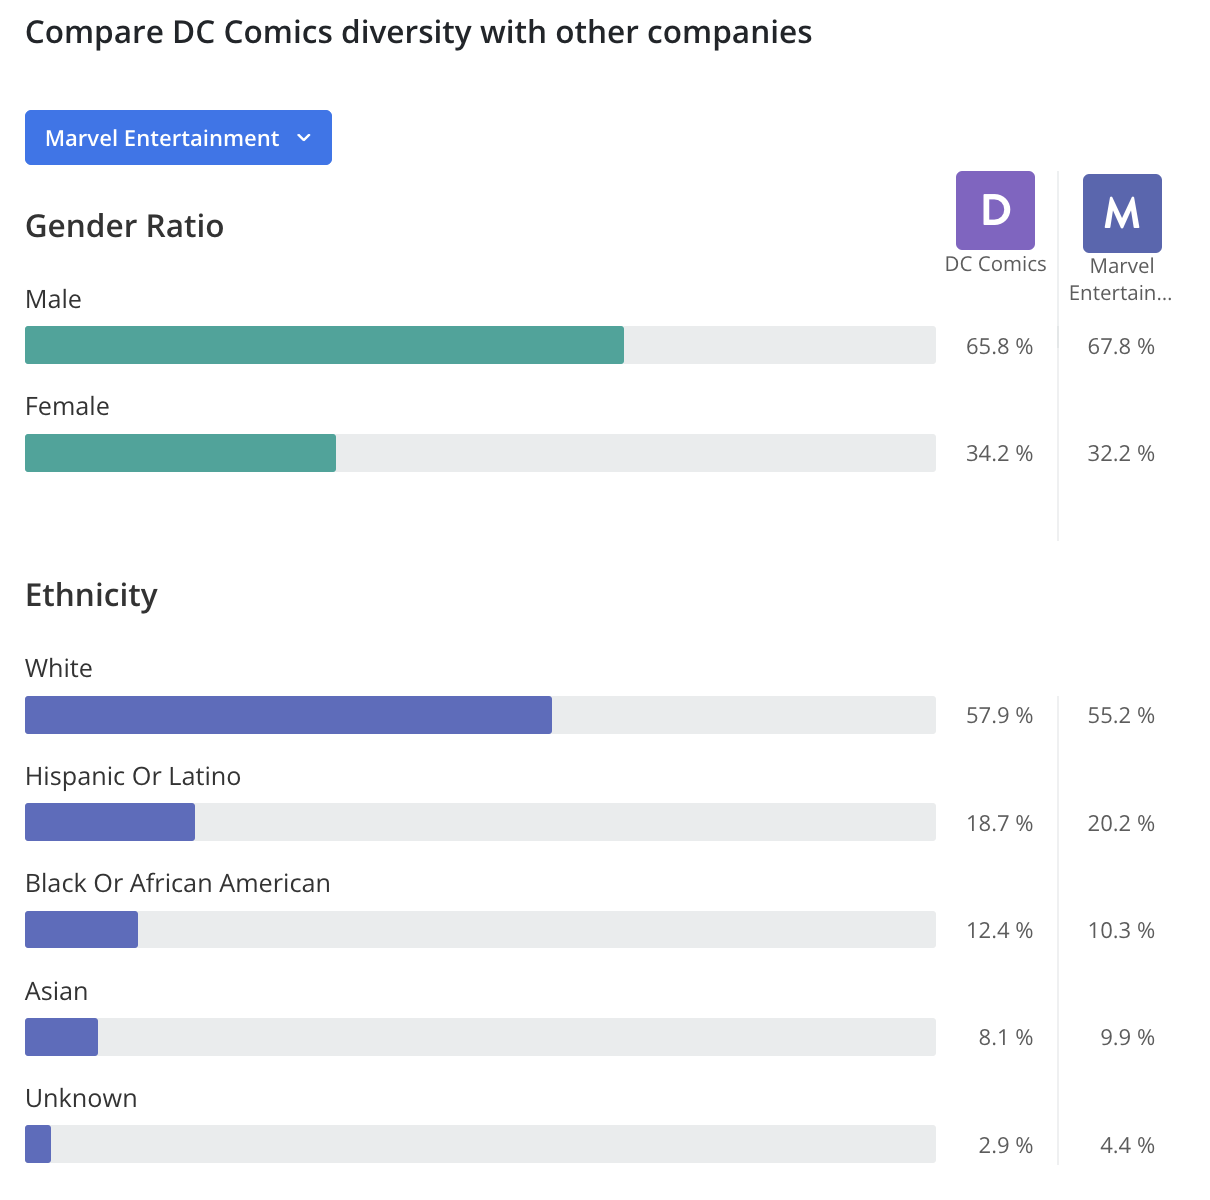 DC Comics Demographics and Statistics